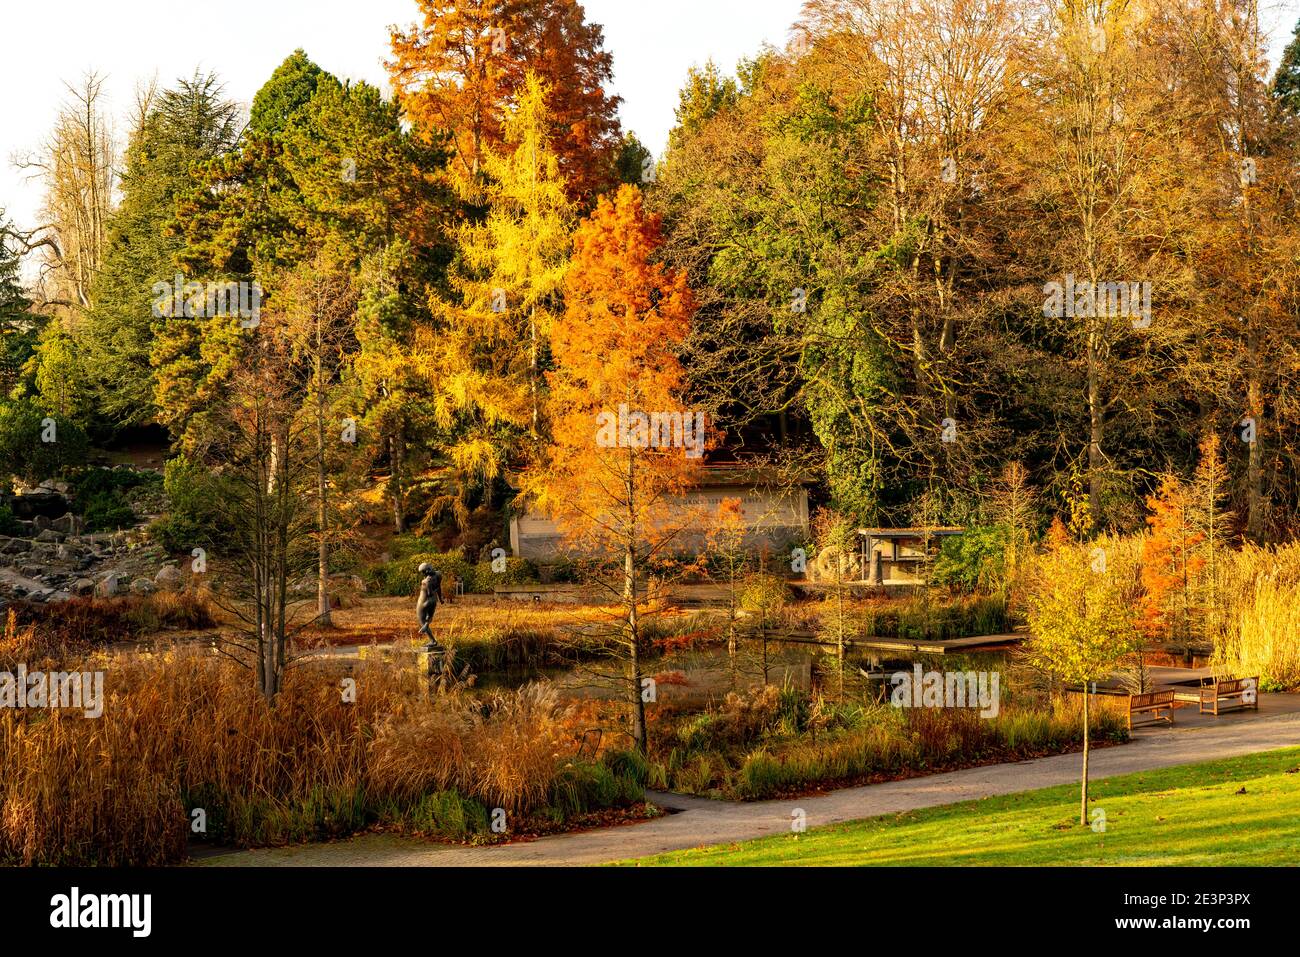 El Grugapark, Essen, Jardín Botánico, parque para el ocio y la recreación, en el Waldsee, obras de arte Big Bathers, otoño, Essen, NRW, Alemania, Foto de stock